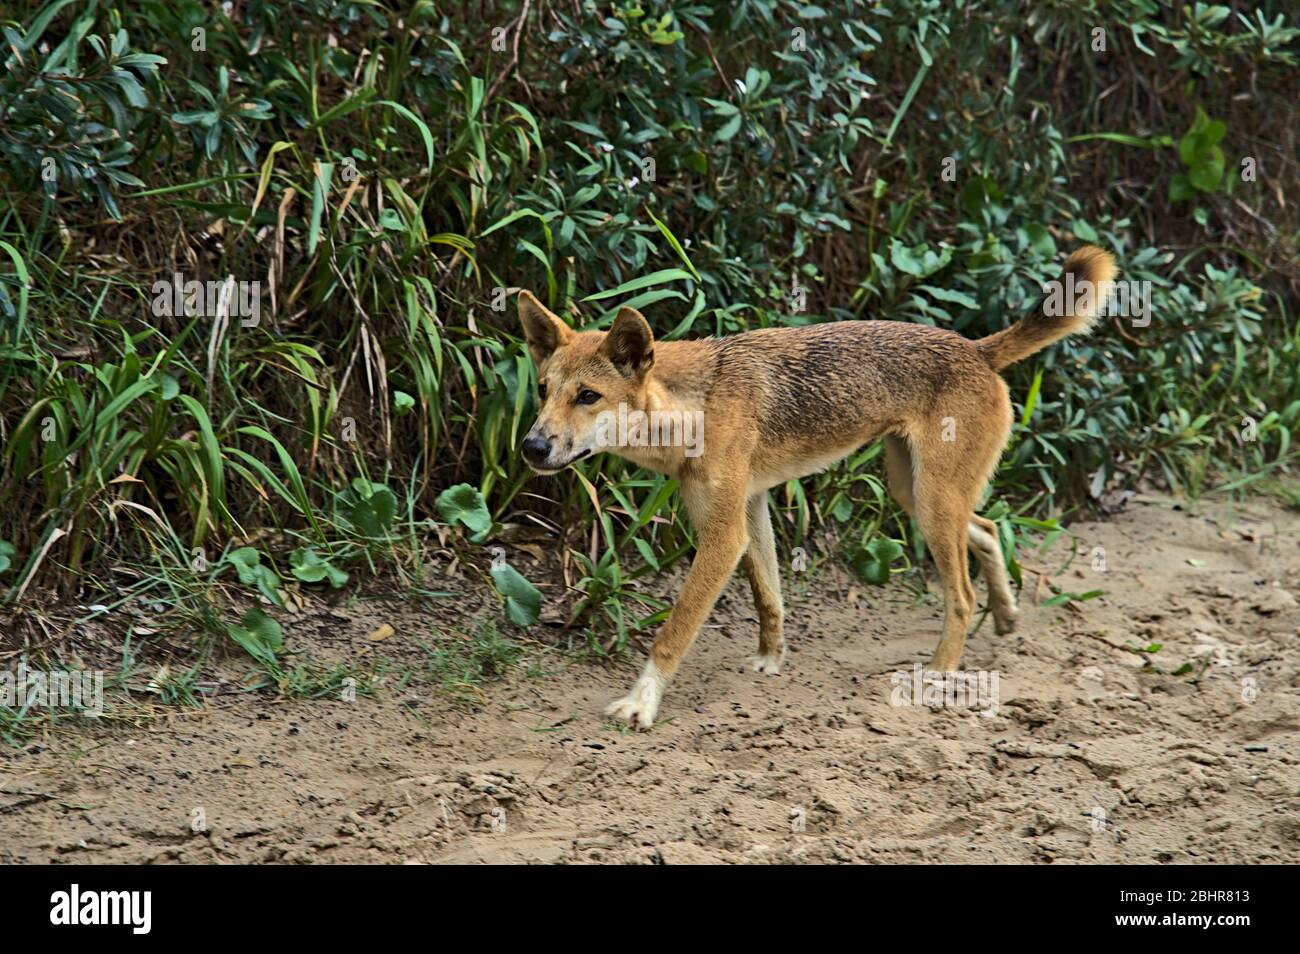 Wild dingo on Frazer Island approaching curiously Stock Photo